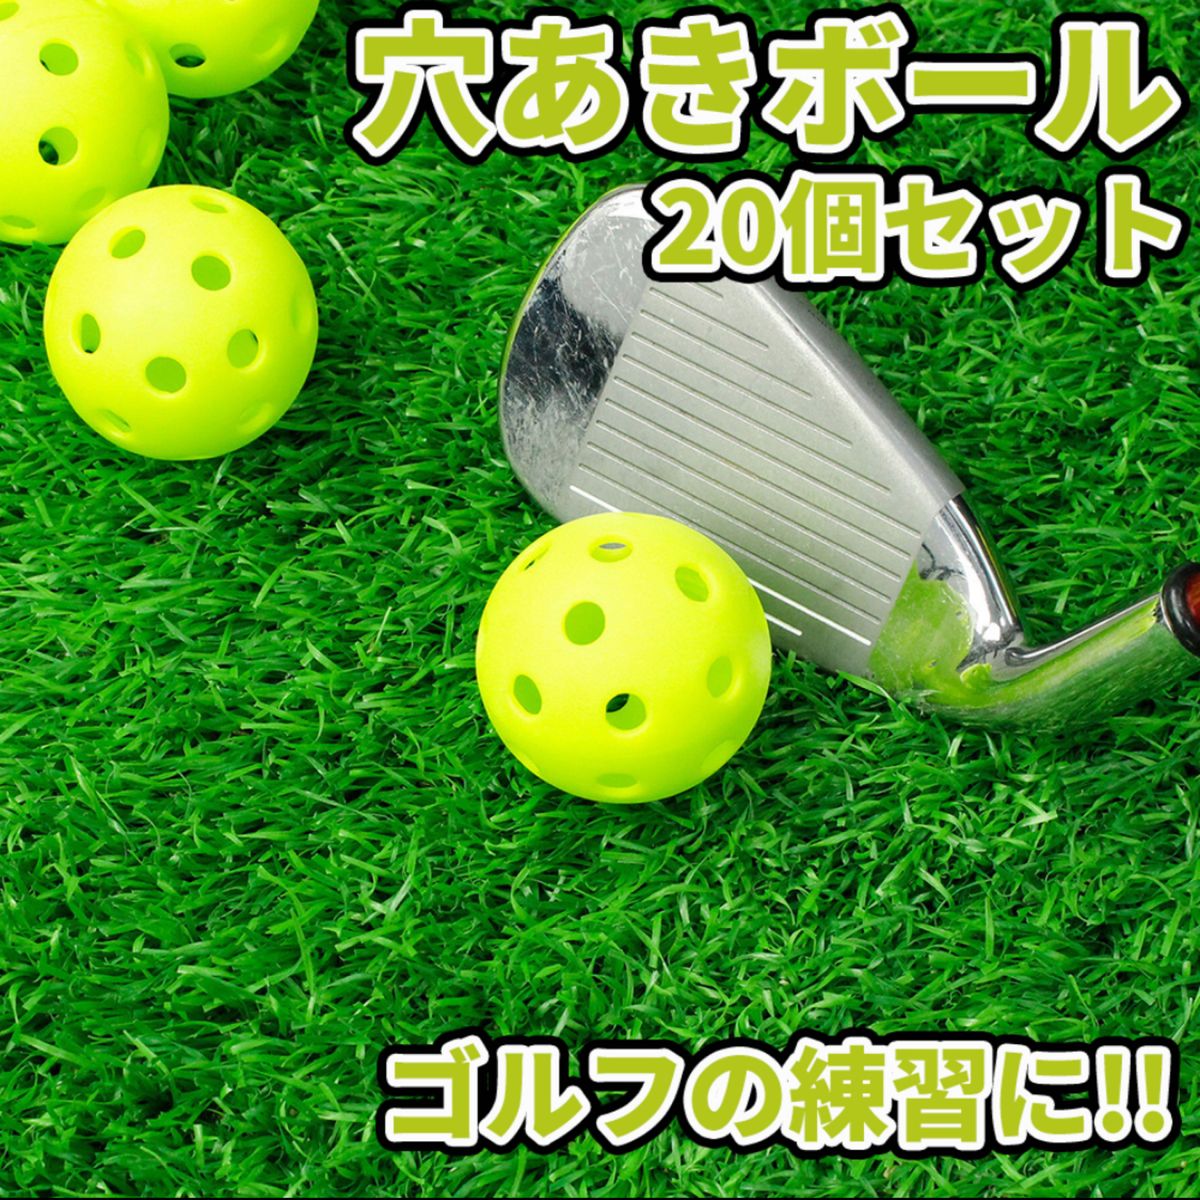 穴あきボール20個セット 直径41mm ゴルフ 球技  練習 黄緑